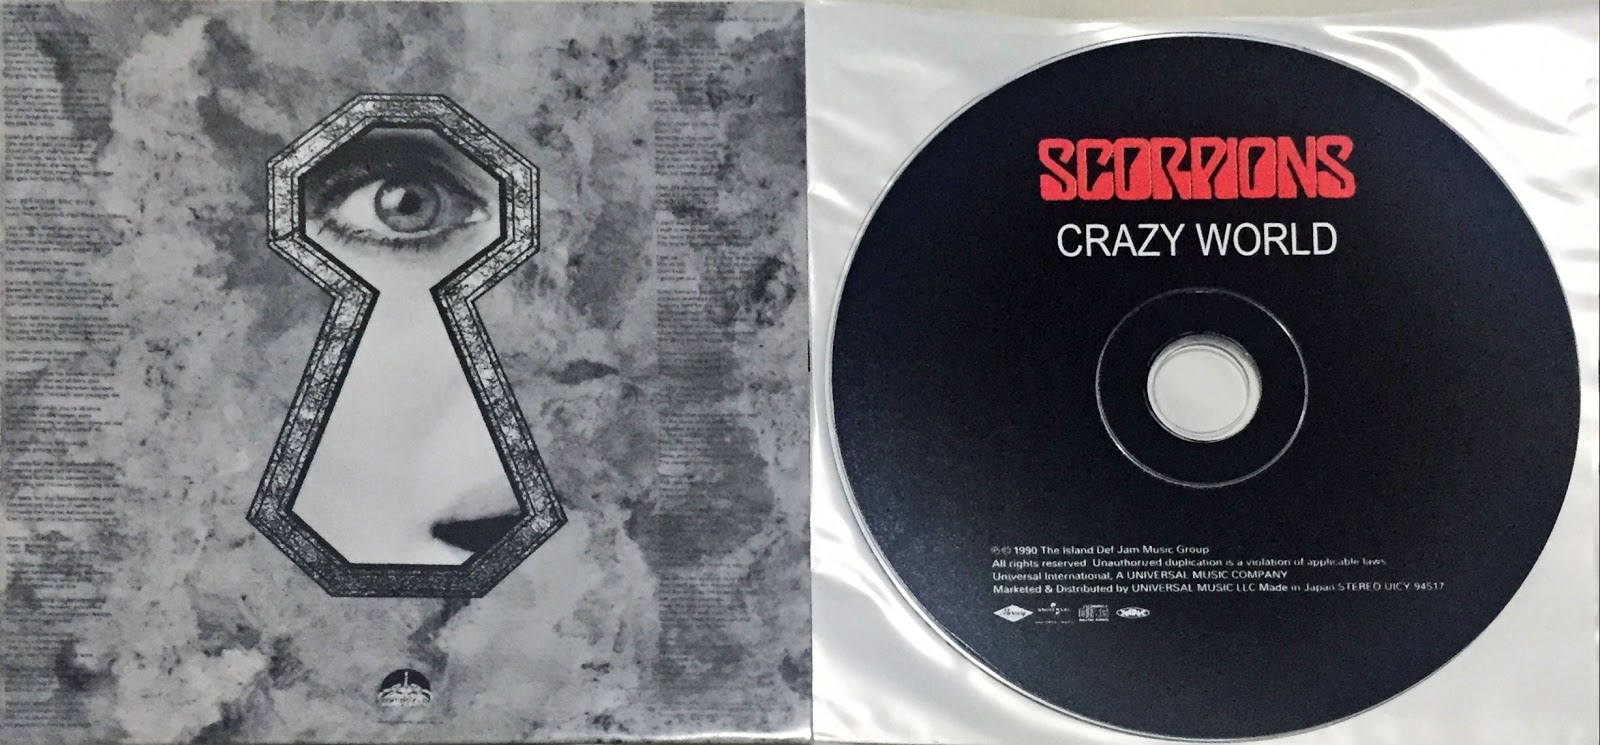 Scorpions world. Scorpions Crazy World 1990. Scorpions Crazy World 1990 обложка. Scorpions 1990 Crazy World обложка альбома. Scorpions Crazy World обложка.